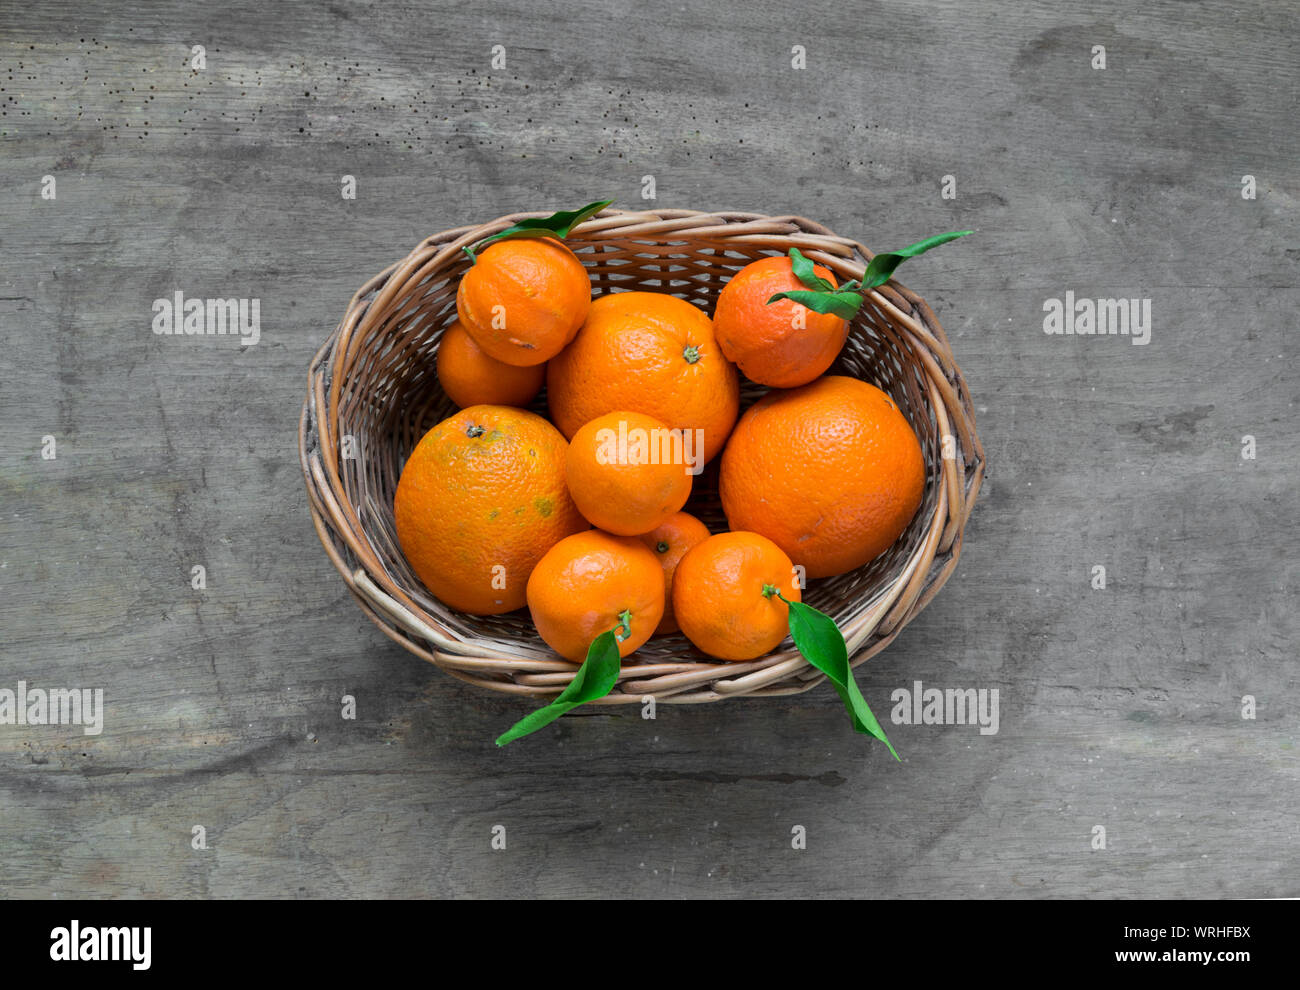 Mandarinen mit Blättern in weiß Warenkorb auf rustikalem Holz Hintergrund. Citrus nur aus dem tree.Organic veg Essen. Winter Früchte. Stockfoto